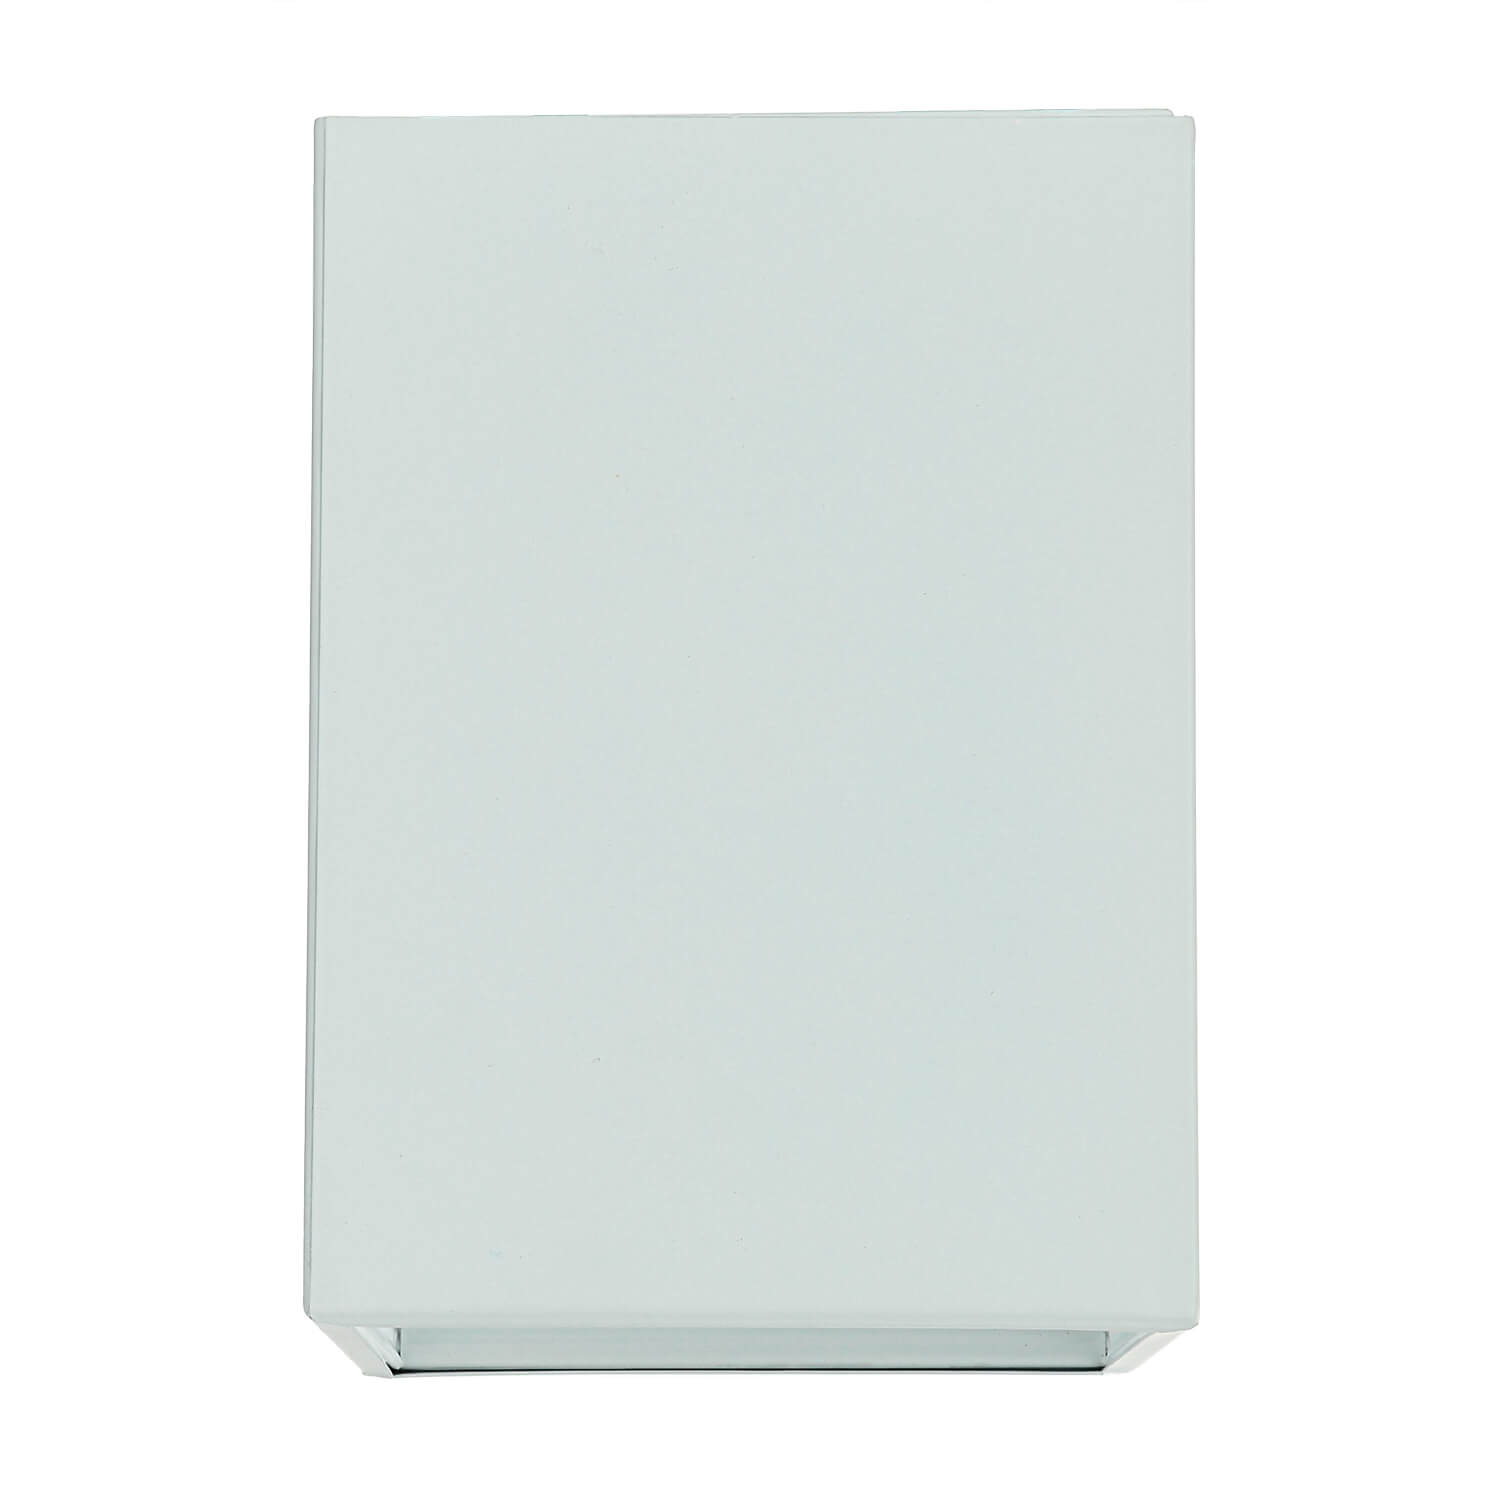 Deckenspot GU10 Weiß Metall eckig 11,5 cm breit DOWNLIGHT